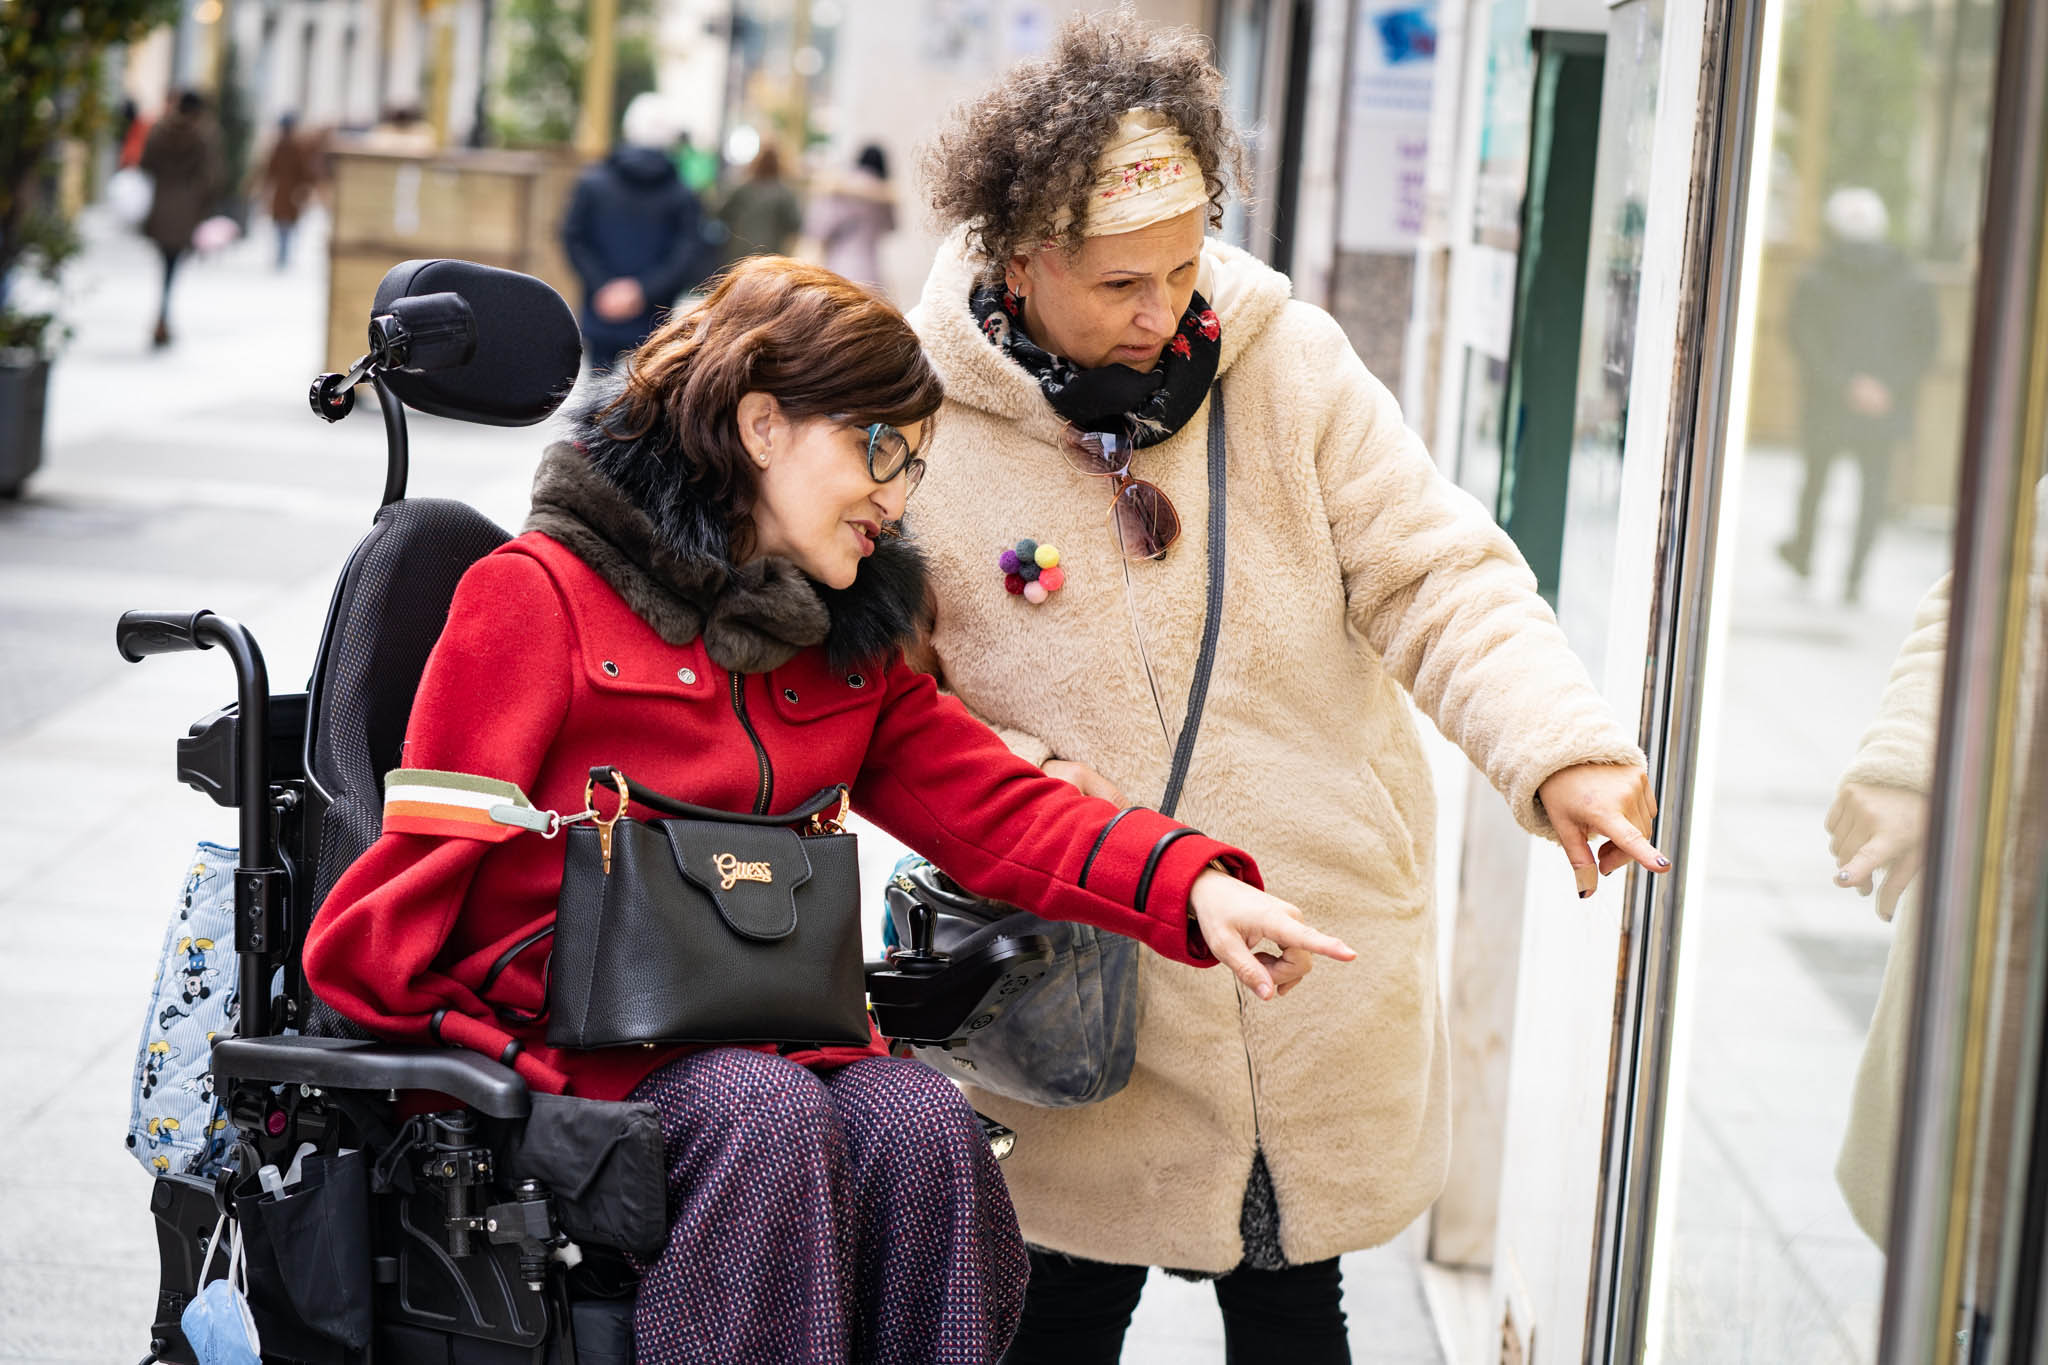 Mujer en silla de ruedas mirando un escaparate junto a su asistente personal